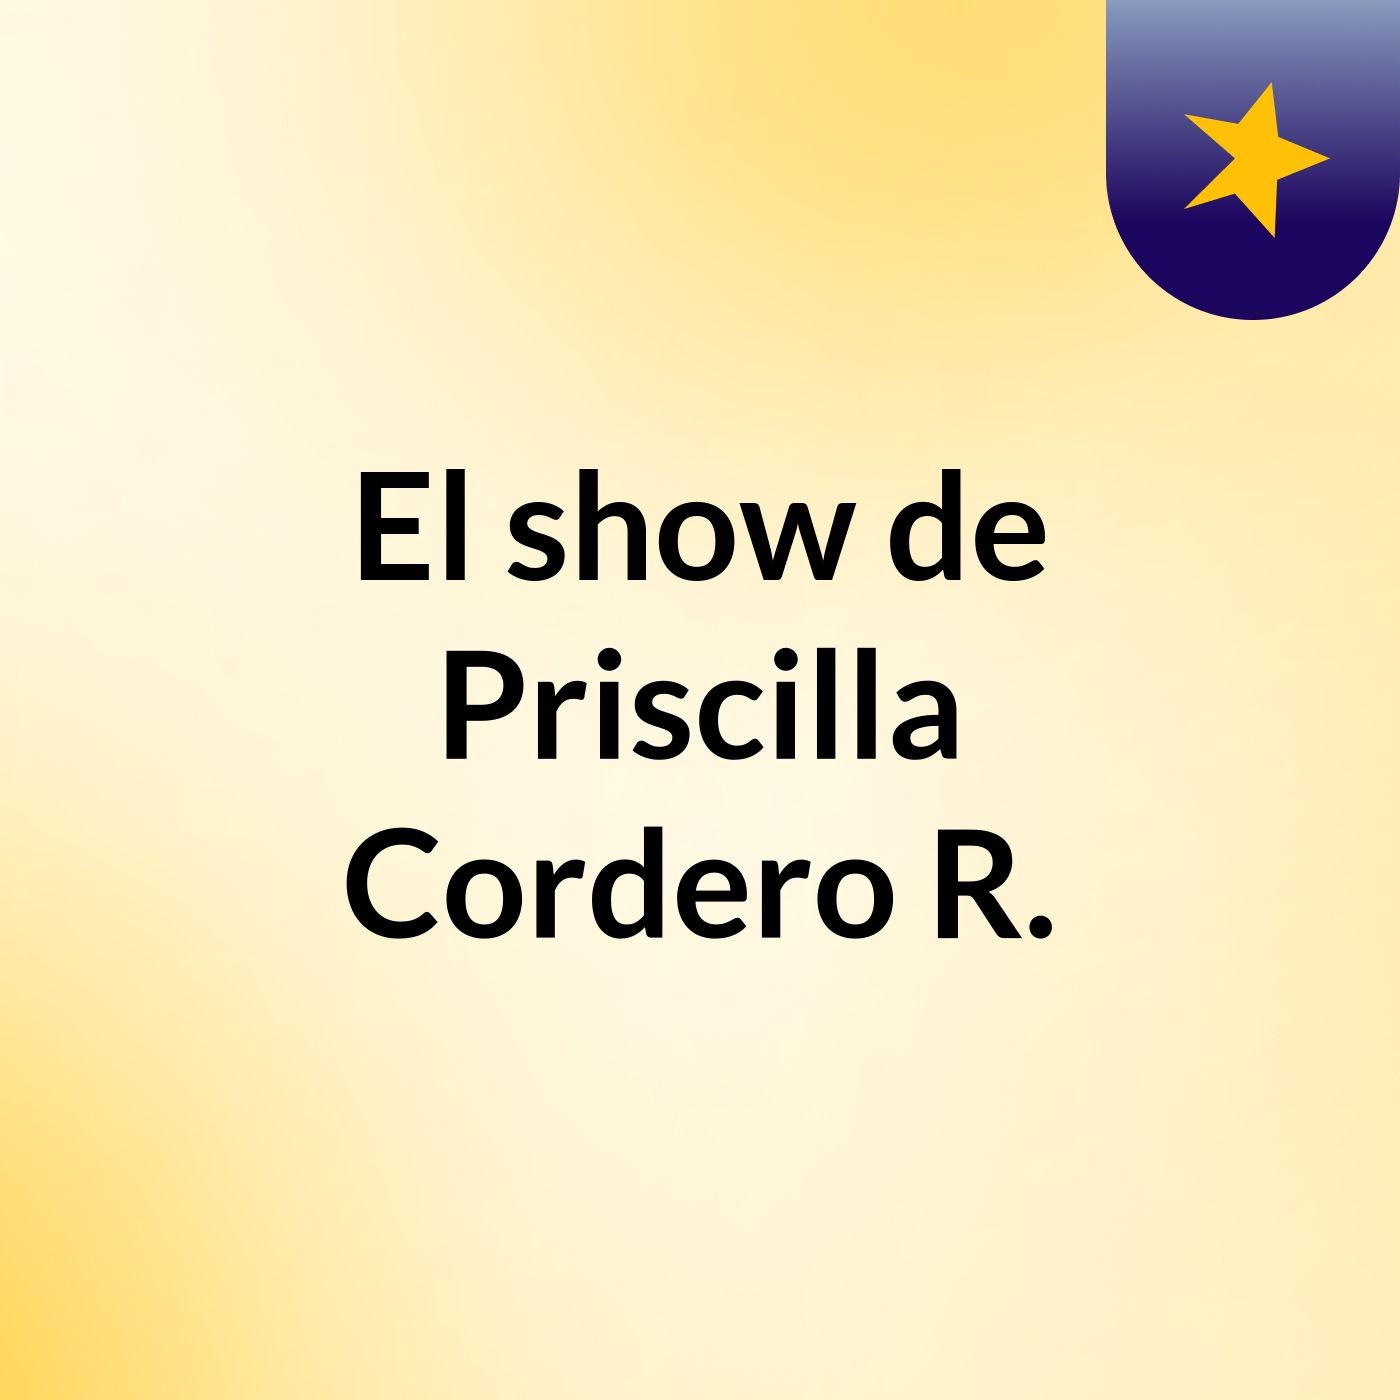 El show de Priscilla Cordero R.